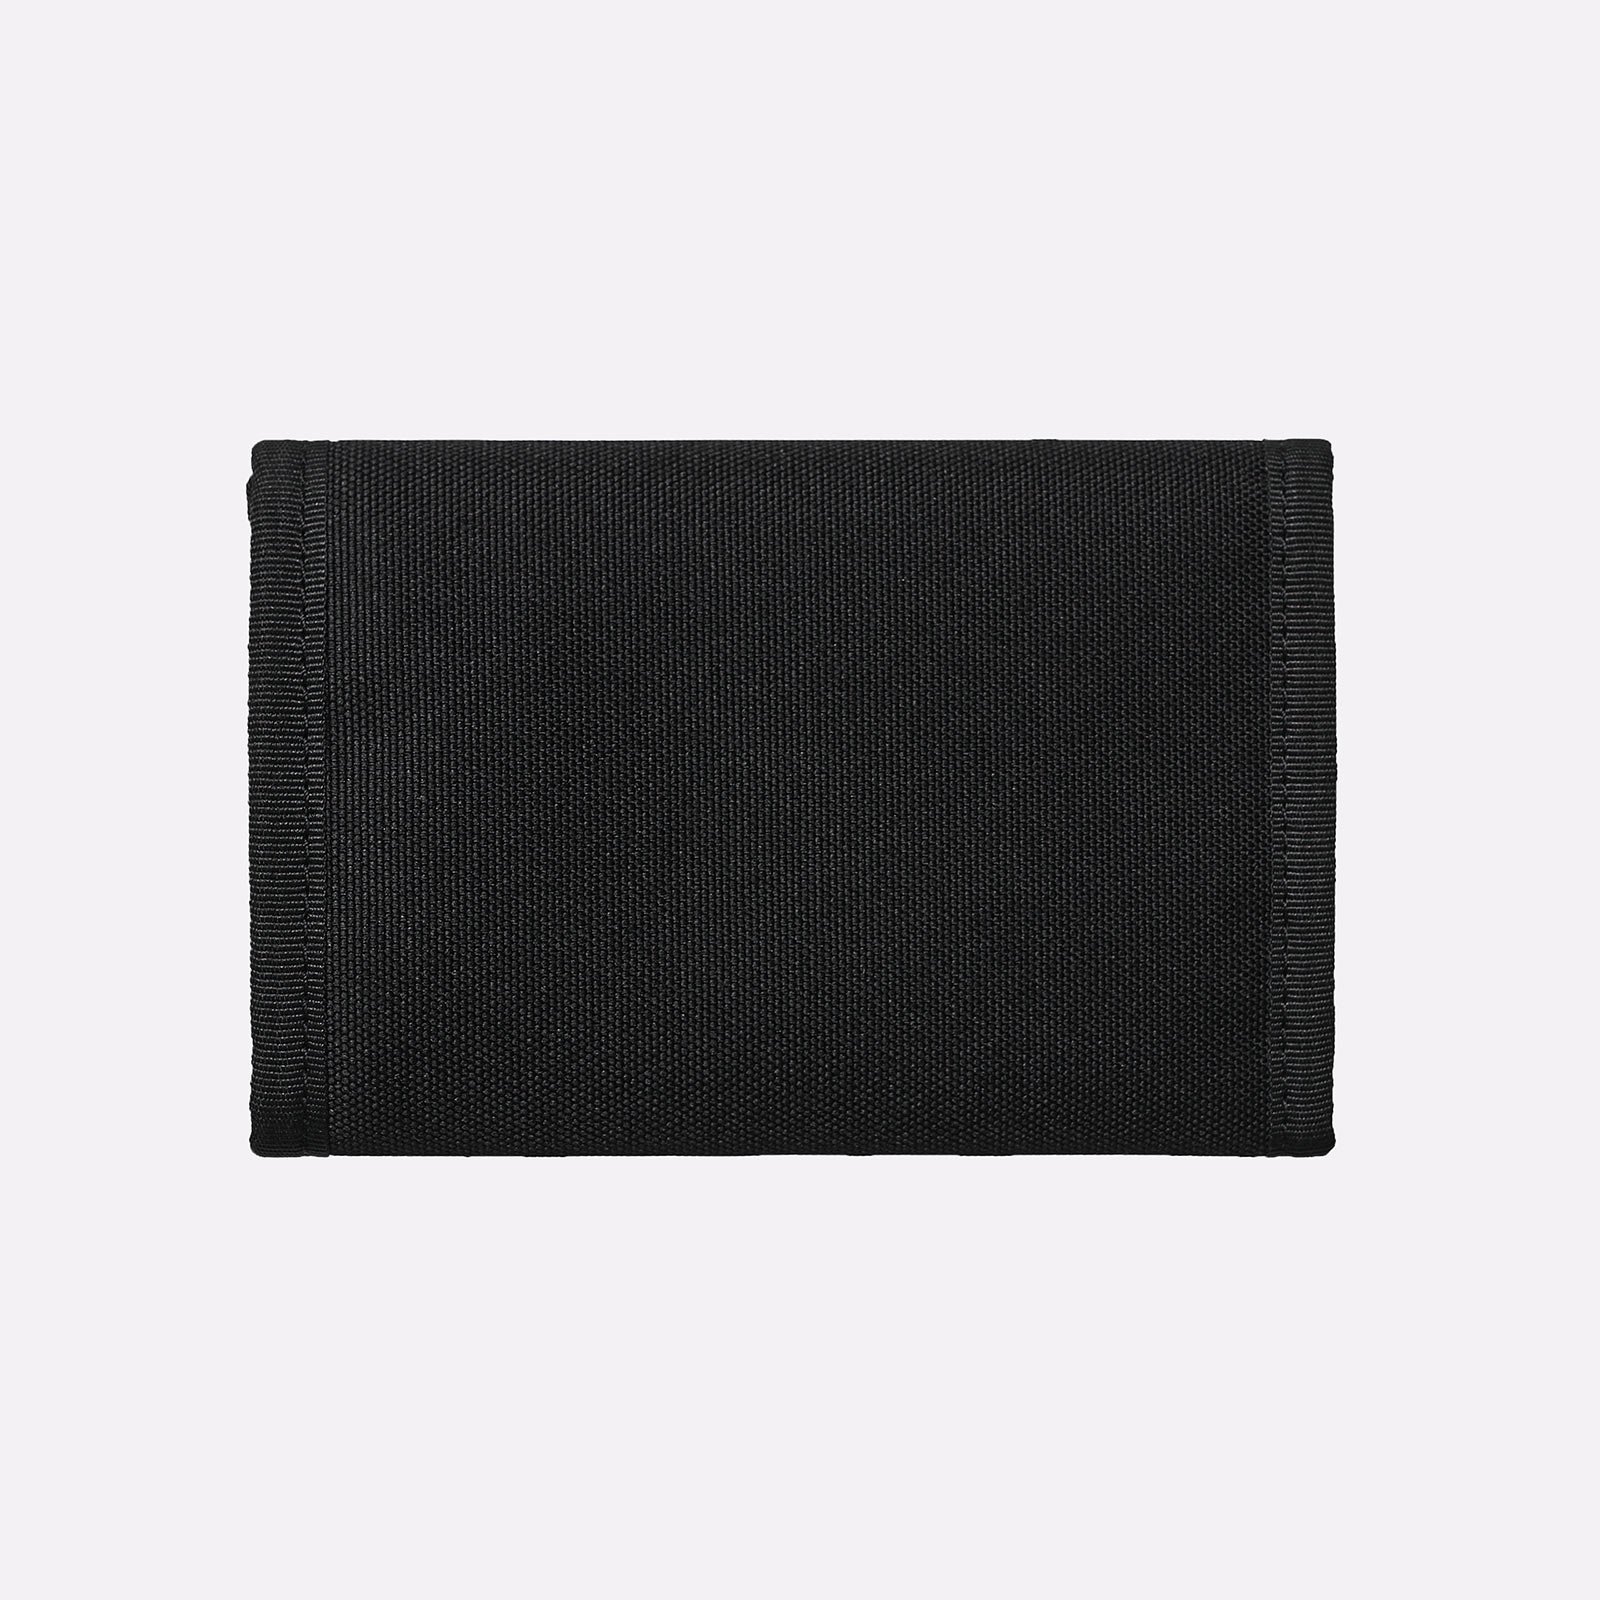  черный бумажник Carhartt WIP Alec Wallet I031471-black - цена, описание, фото 2